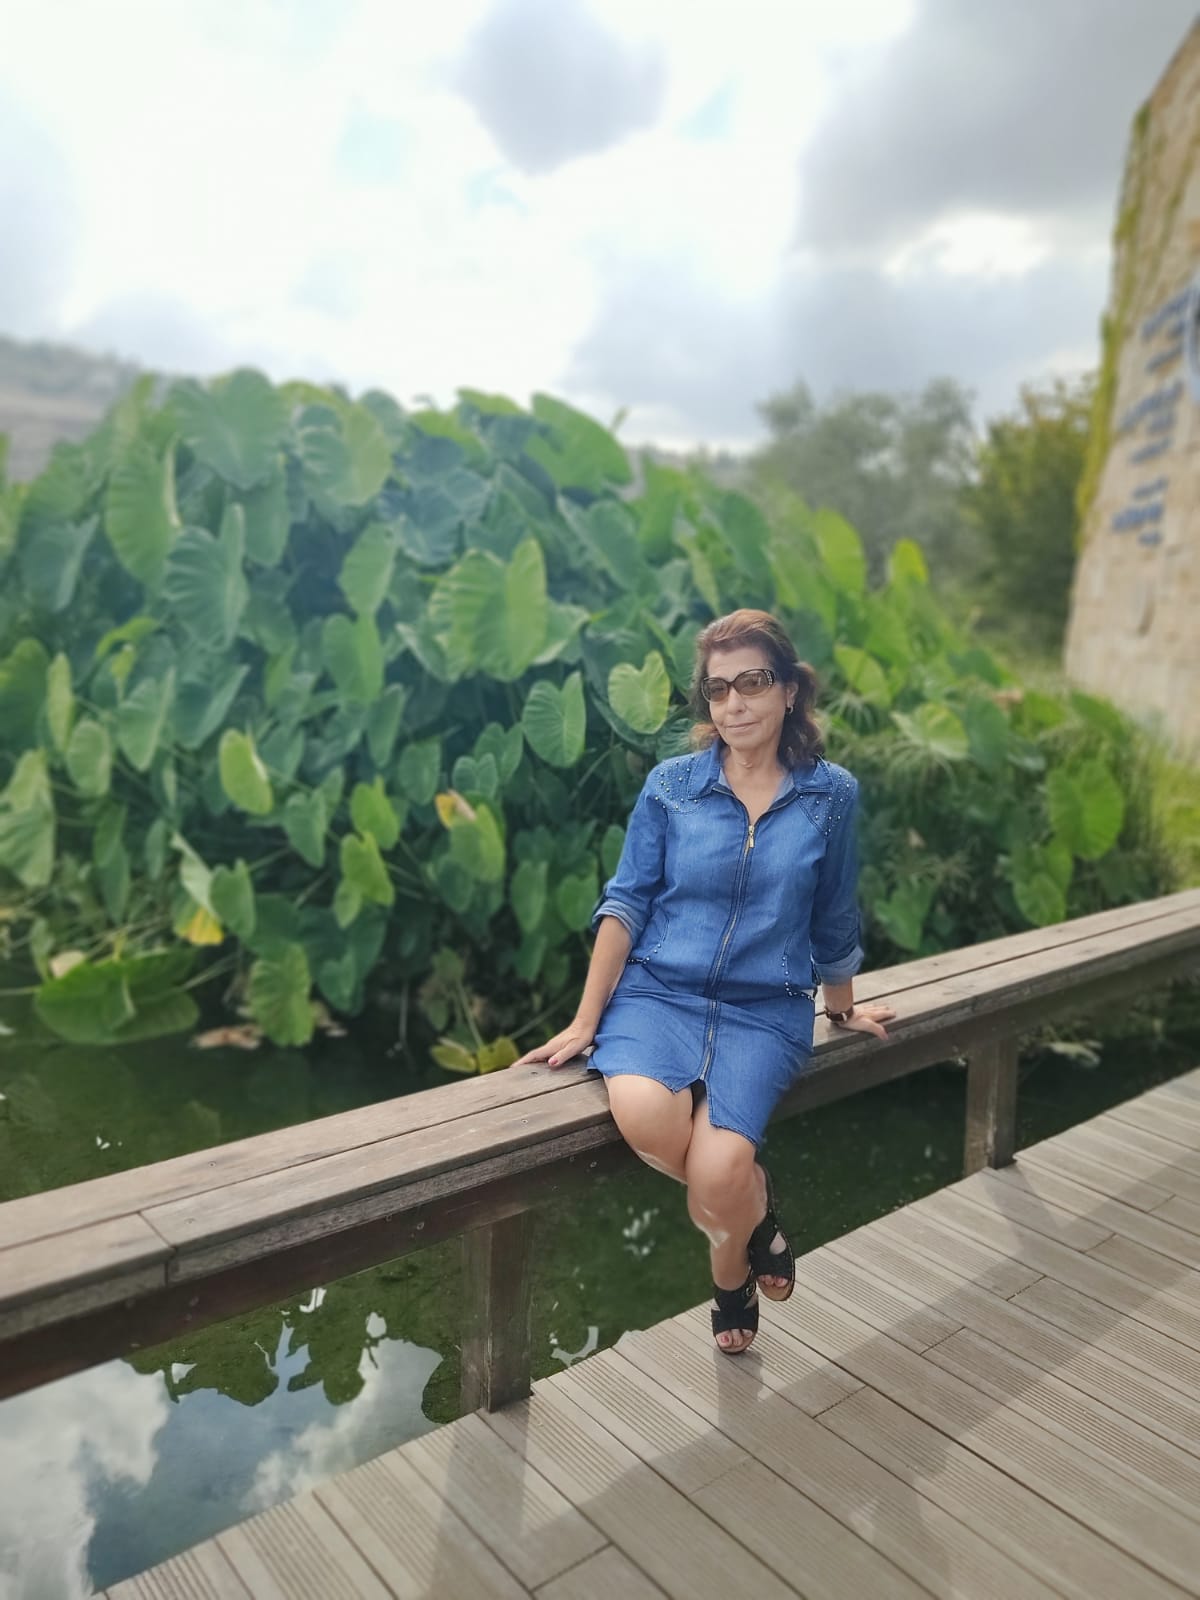 תל אביב – בת 50+ ישראלית אירופאית